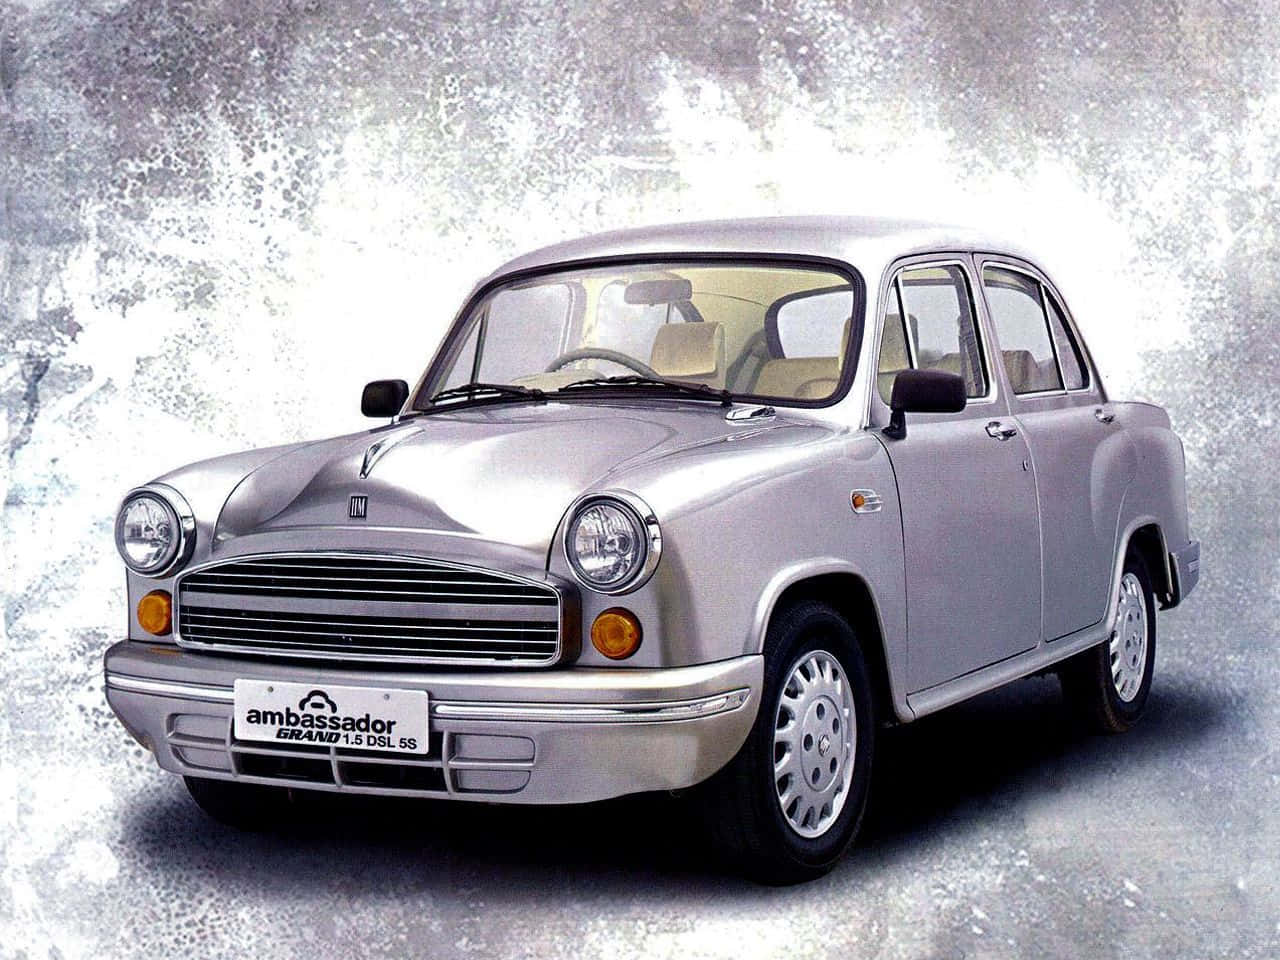 Iconic Hindustan Motors Ambassador Car Wallpaper